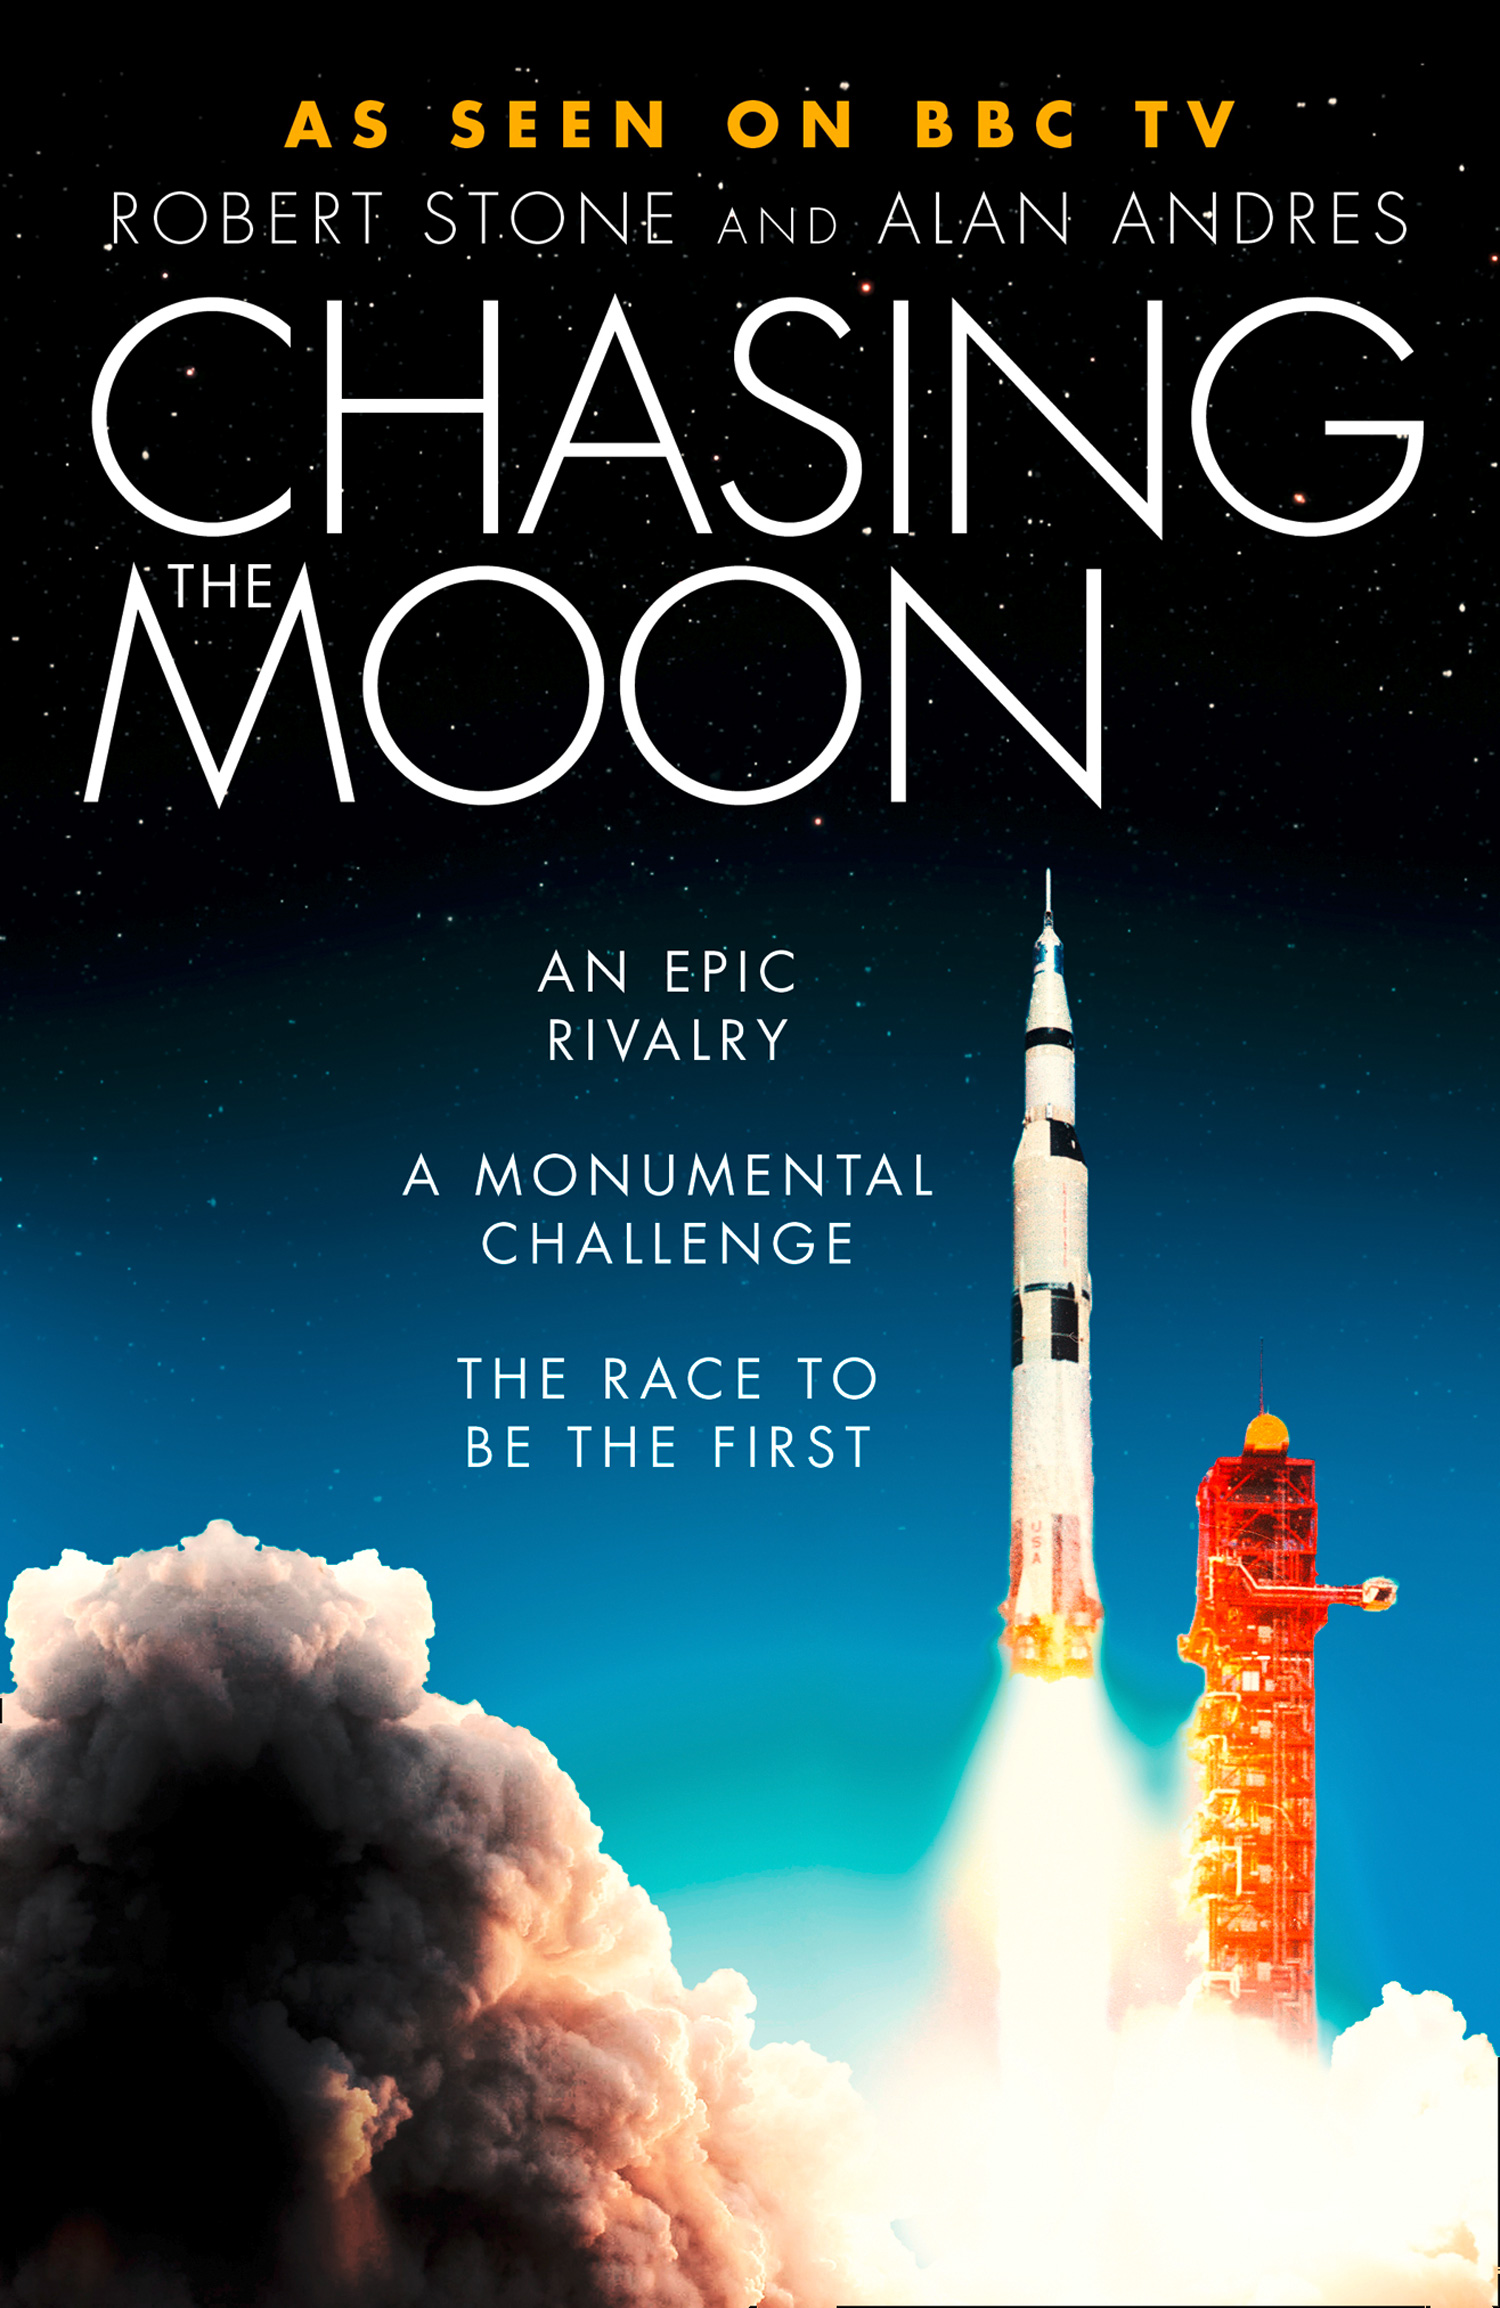 Races the moon. Arthur c Clarke Cover book.